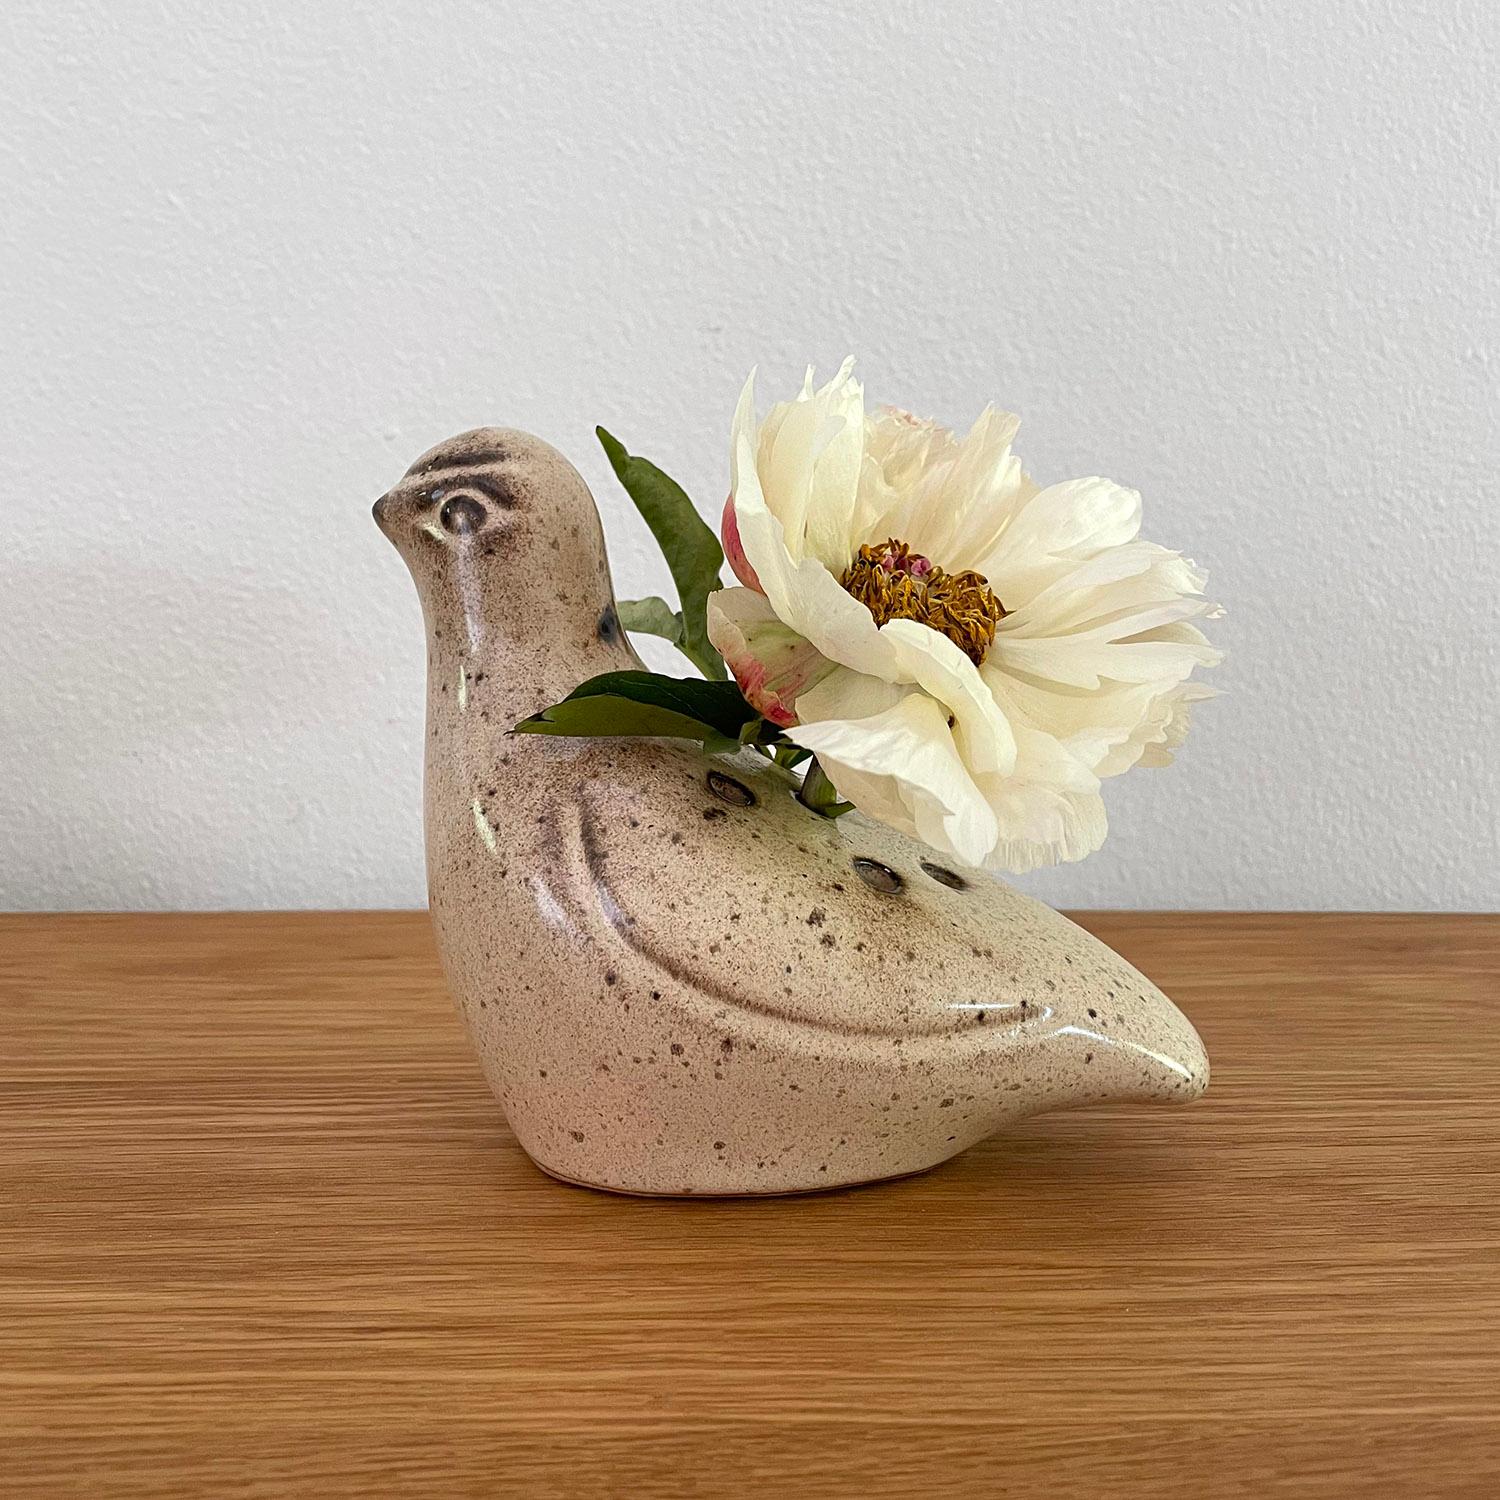 Französische Keramik-Vase mit Taube
Frankreich, ca. 1960er Jahre
Tauben werden oft zu Boten und Symbolen der Liebe und des Friedens erklärt
Petite Vase mit Froschlöchern für optimale Blumenanordnung
Patina durch Alter und Gebrauch
Das Schiff wurde